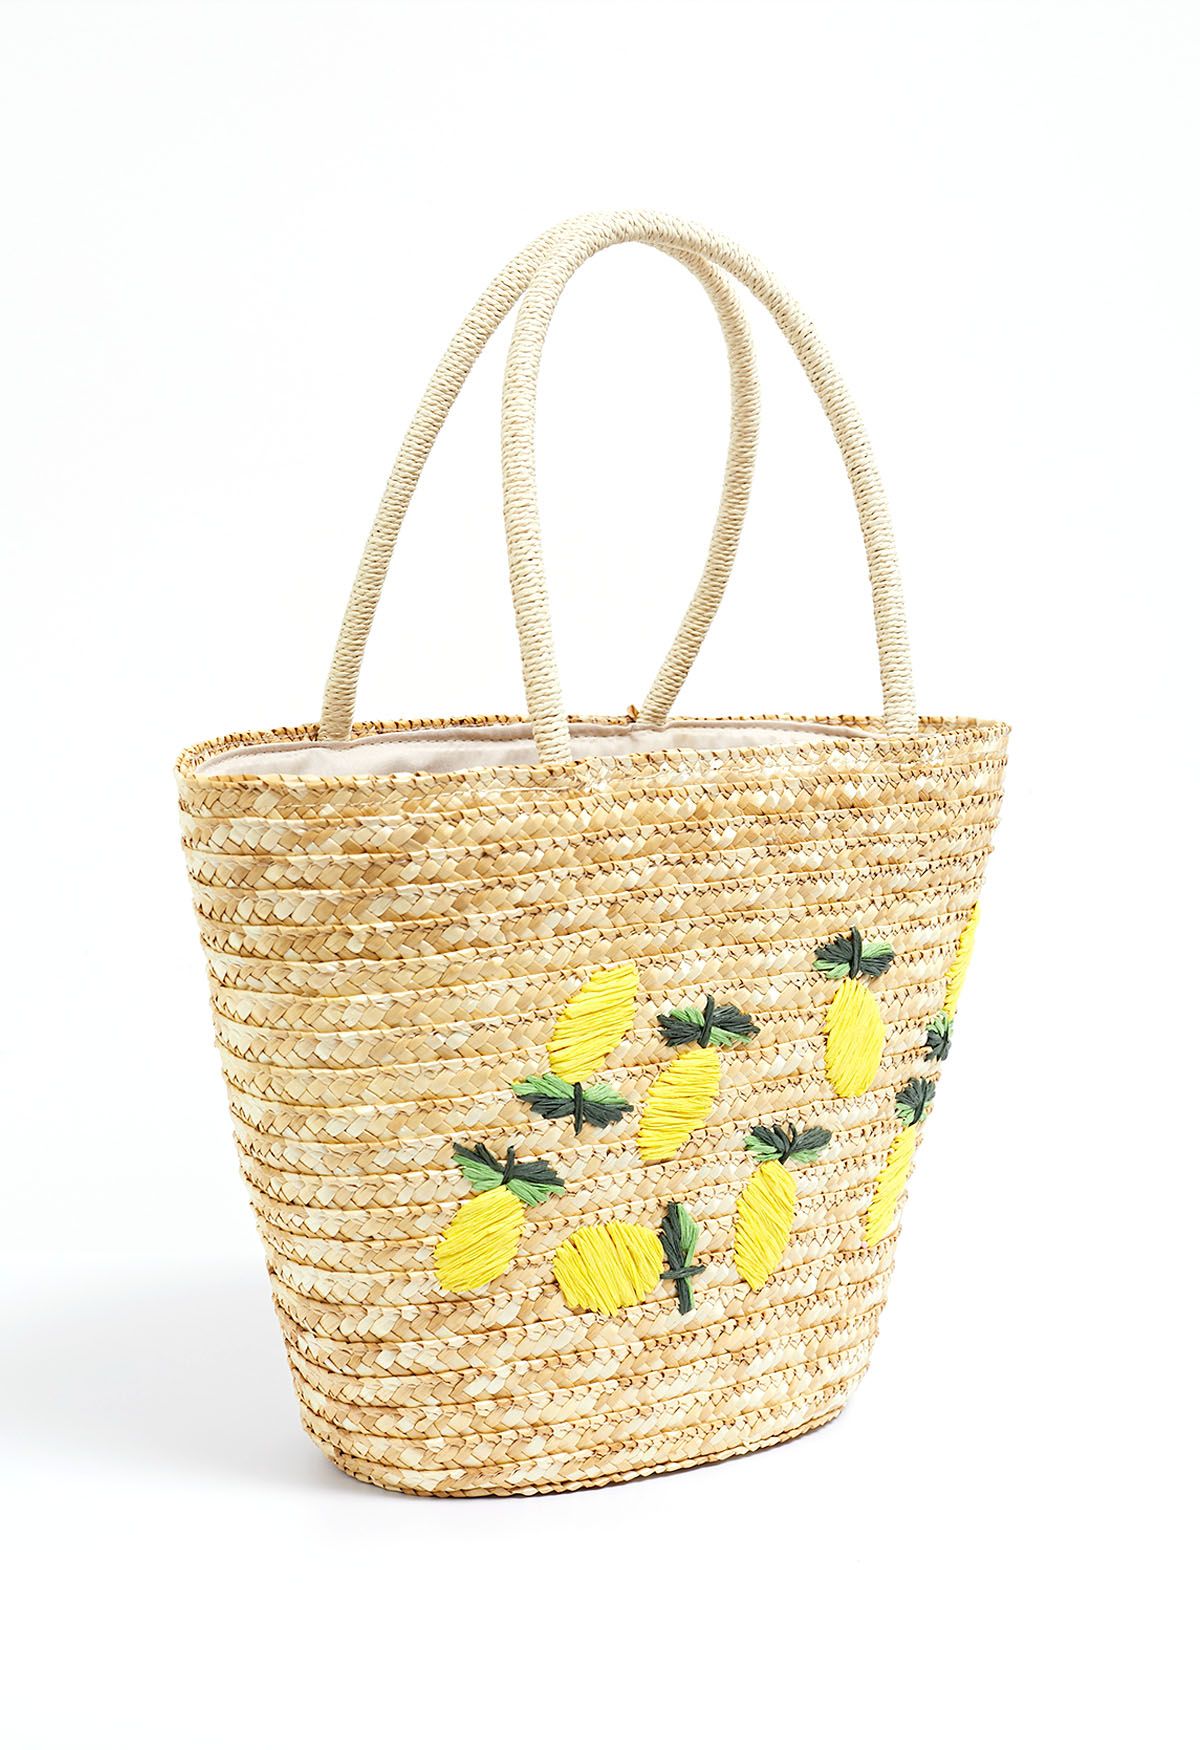 Handgemachte Strandtasche aus gewebtem Stroh mit Zitronenmuster